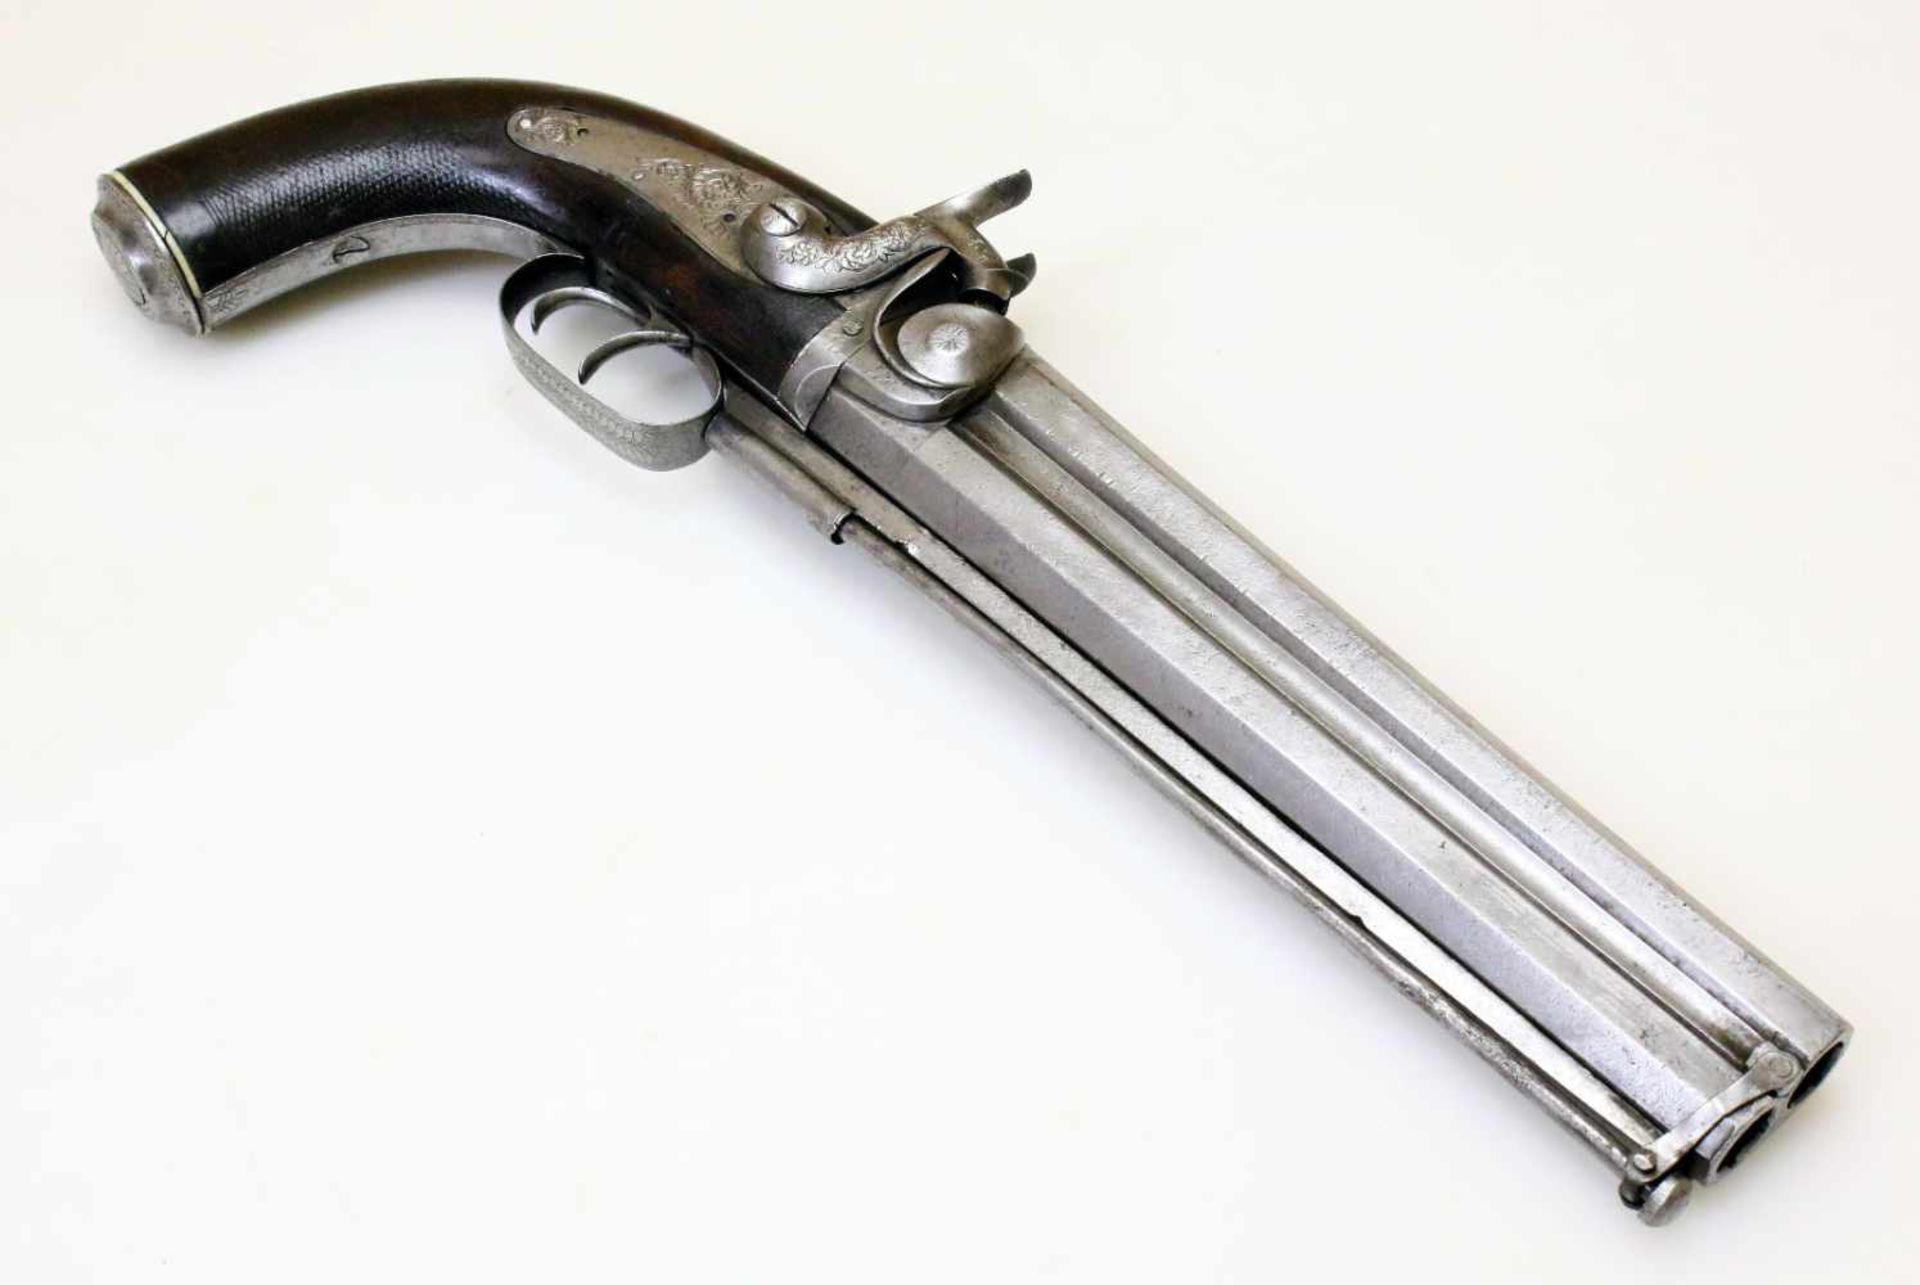 Doppelläufige Perkussionspistole - England um 1850 Cal. 14mm Perk., Zustand 2. Zwei übereinander - Bild 2 aus 15